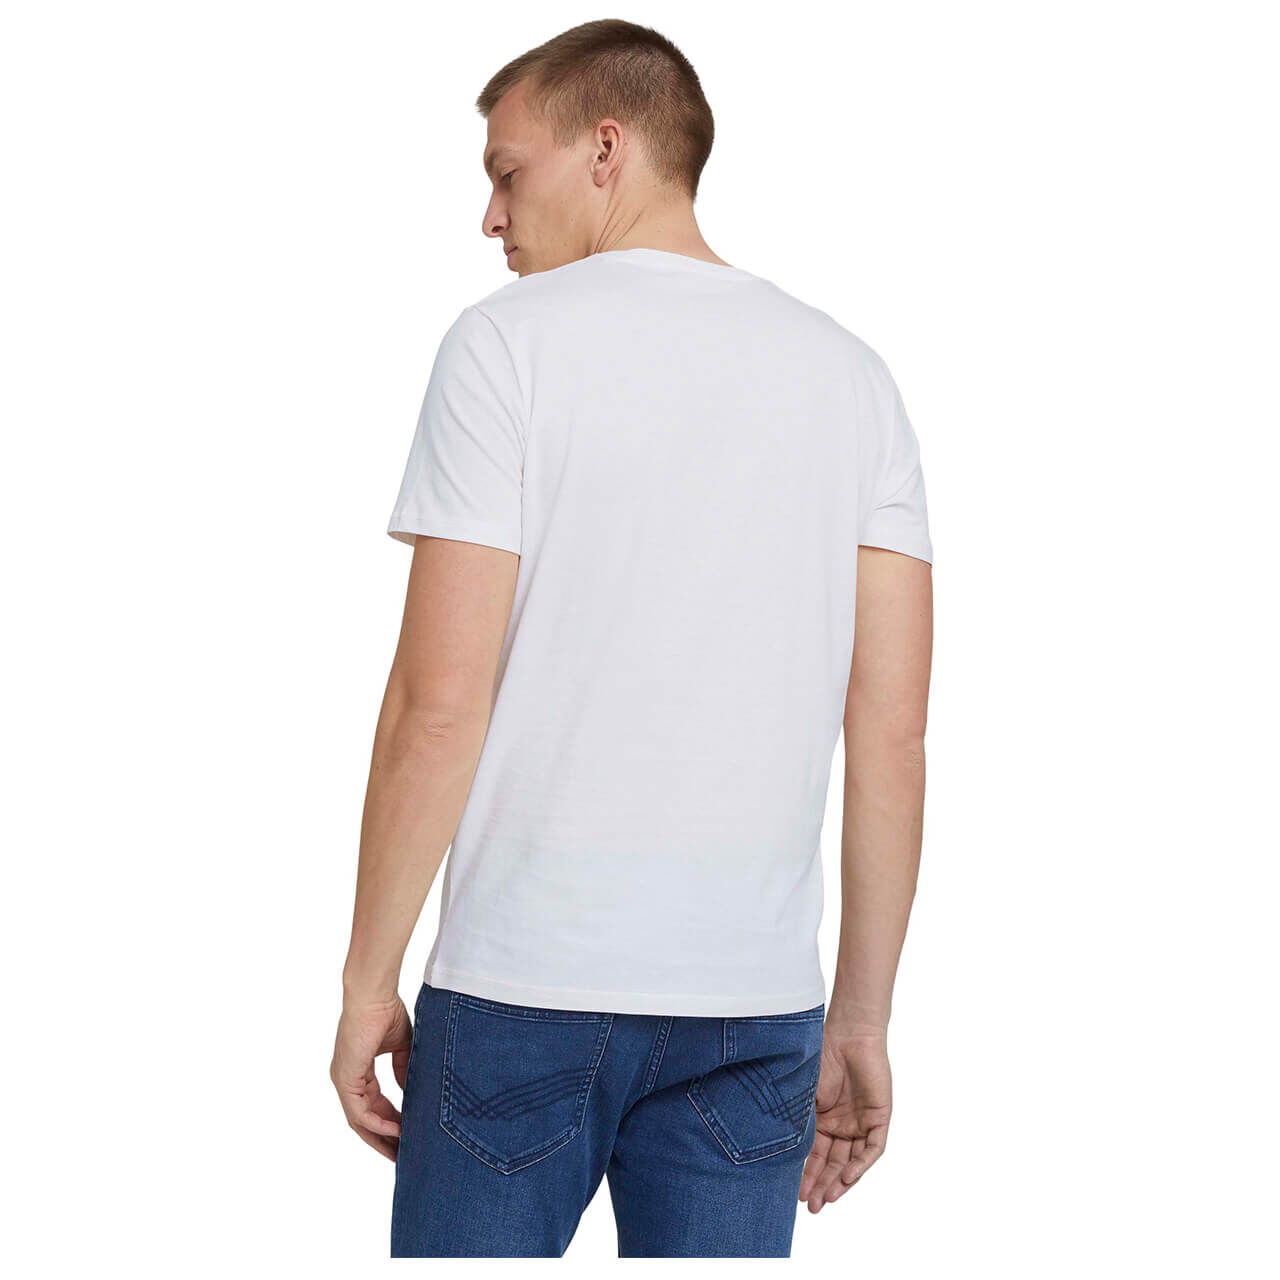 Tom Tailor T-Shirt für Herren in Weiß mit Print, FarbNr.: 10332